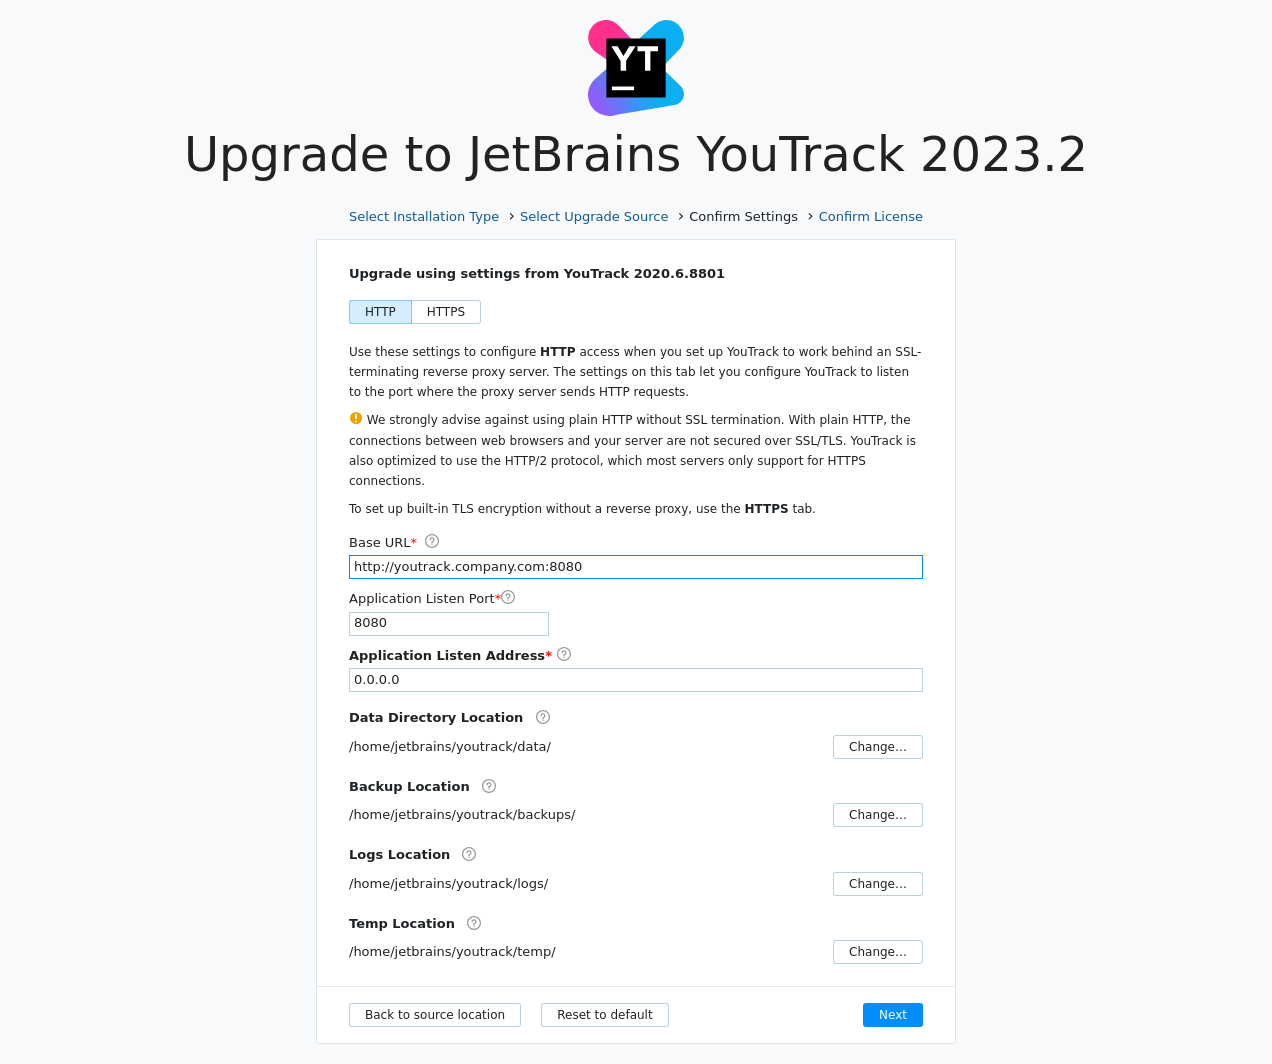 Youtrack zip upgrade settings